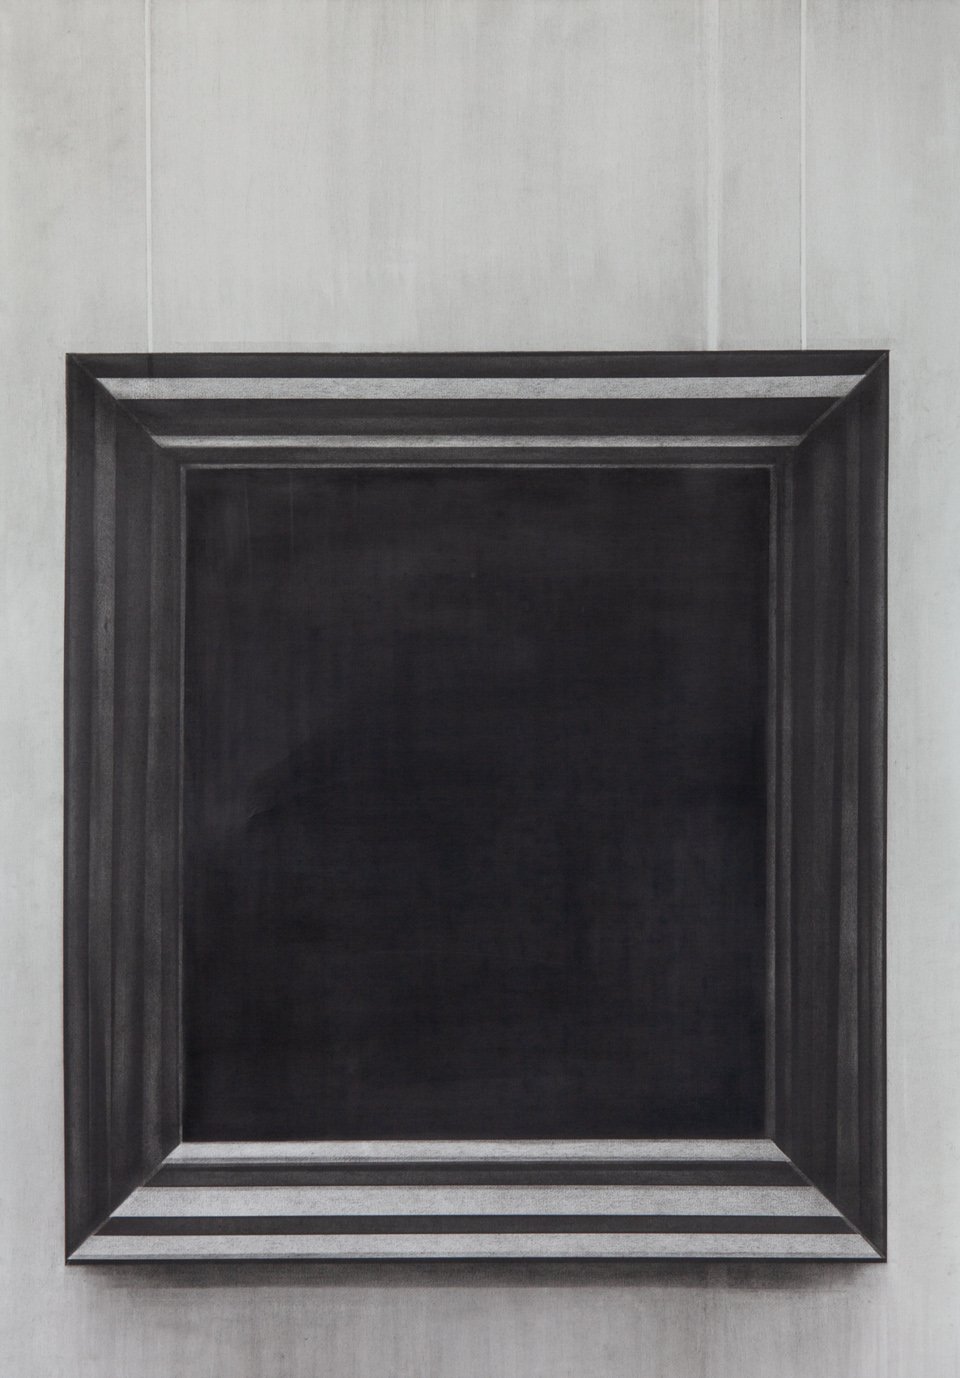  Black Square, 2019, Kohle auf Papier, 100 x 70 cm 